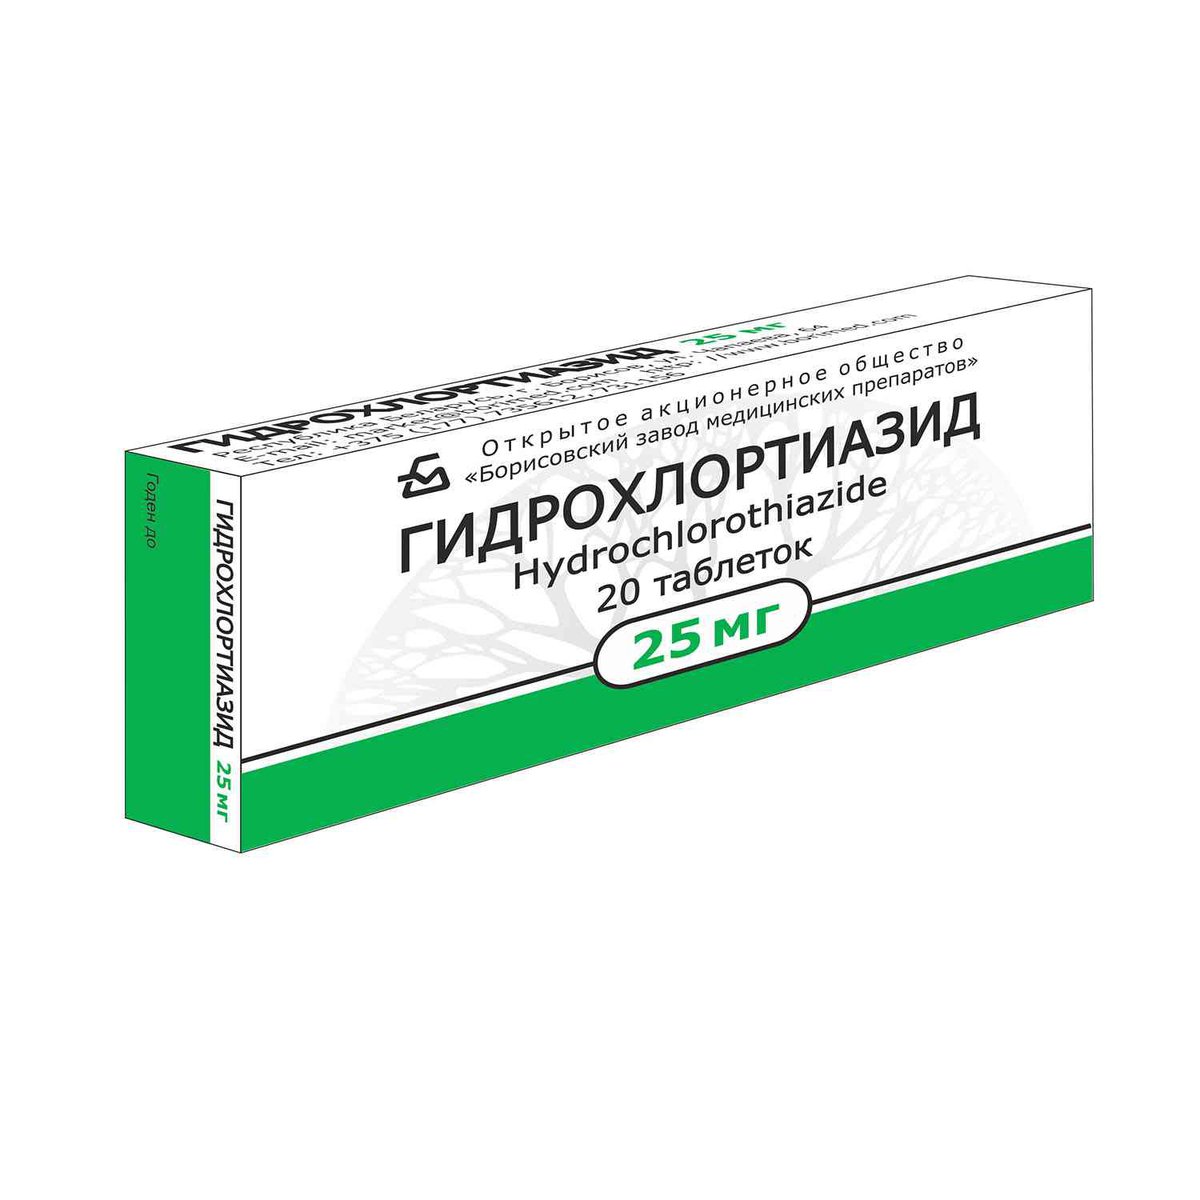 Гидрохлортиазид (таблетки, 20 шт, 25 мг, для приема внутрь) - цена .